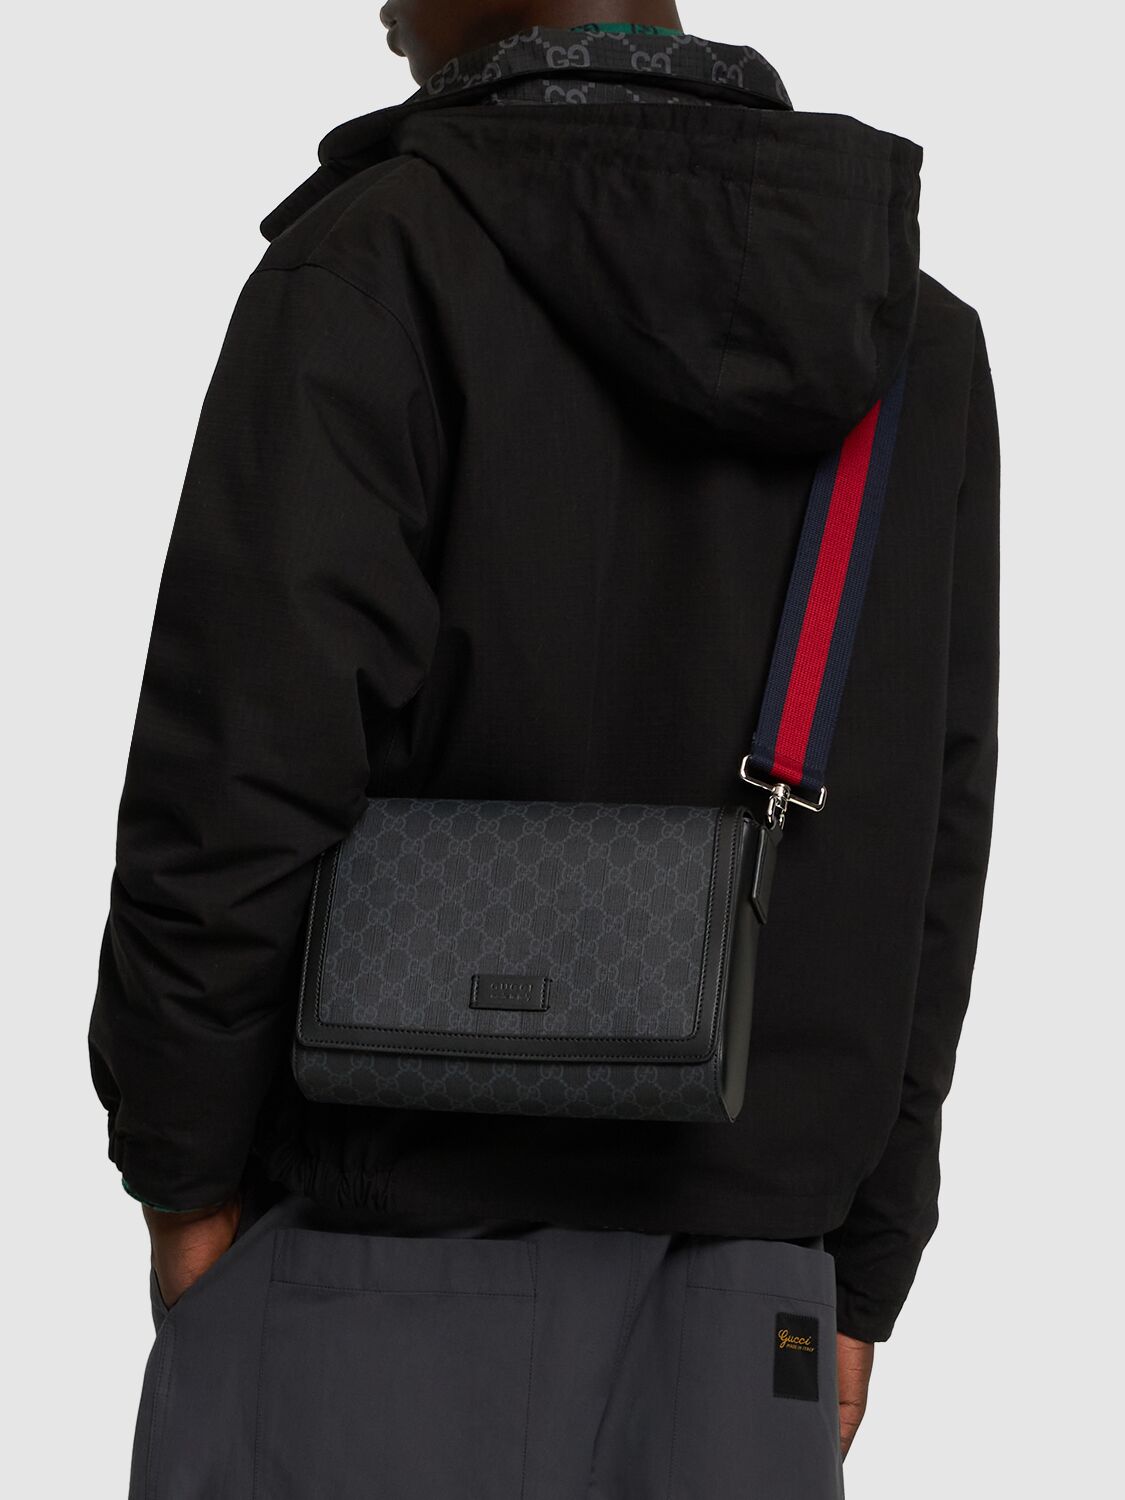 Shop Gucci Gg Supreme Crossbody Bag In Black